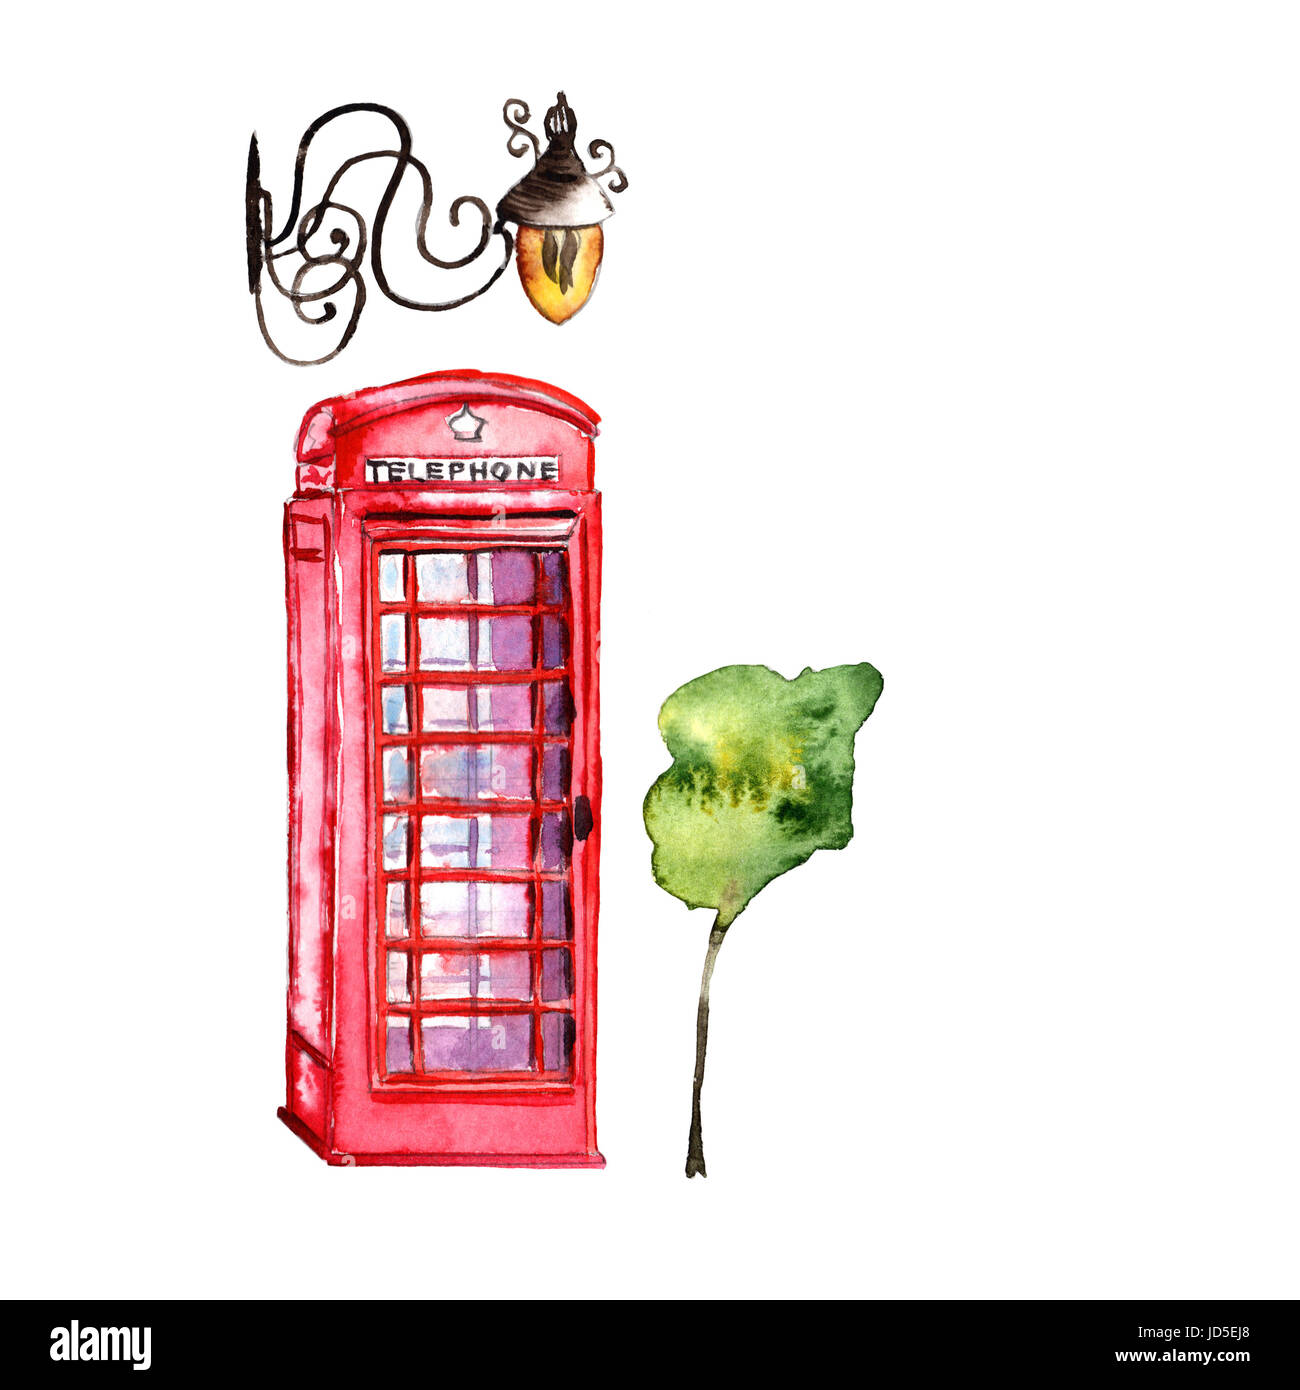 Modèle de Londres aquarelle illustration. Grande-bretagne : les symboles dessinés à la main, d'une cabine téléphonique rouge, Big Ben clock, drapeau de Grande-Bretagne, casque de policier, Banque D'Images